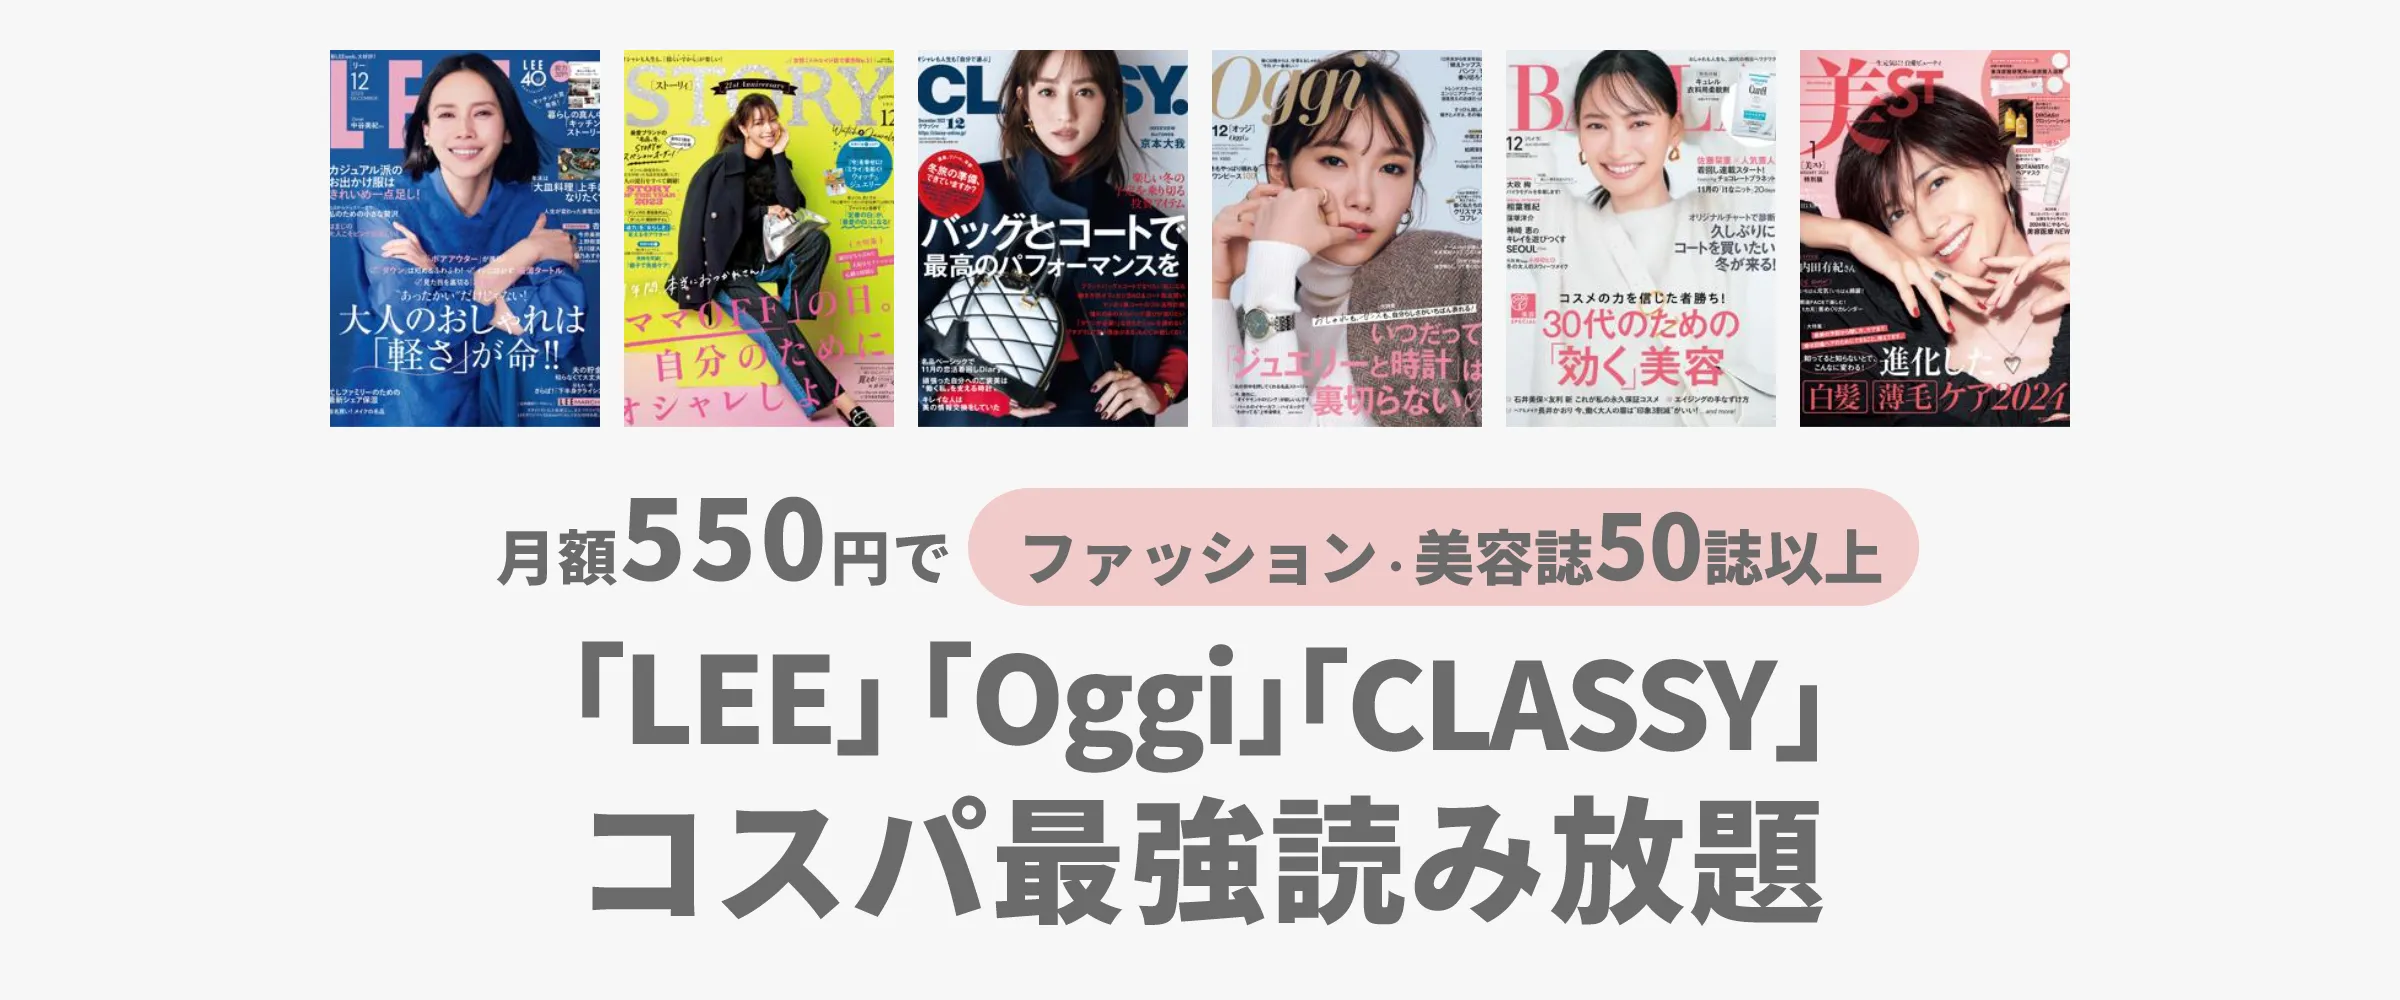 たった550円でLEE、Oggi、CLASSYなどファッション・美容雑誌100誌以上読み放題。最初の1ヵ月無料。